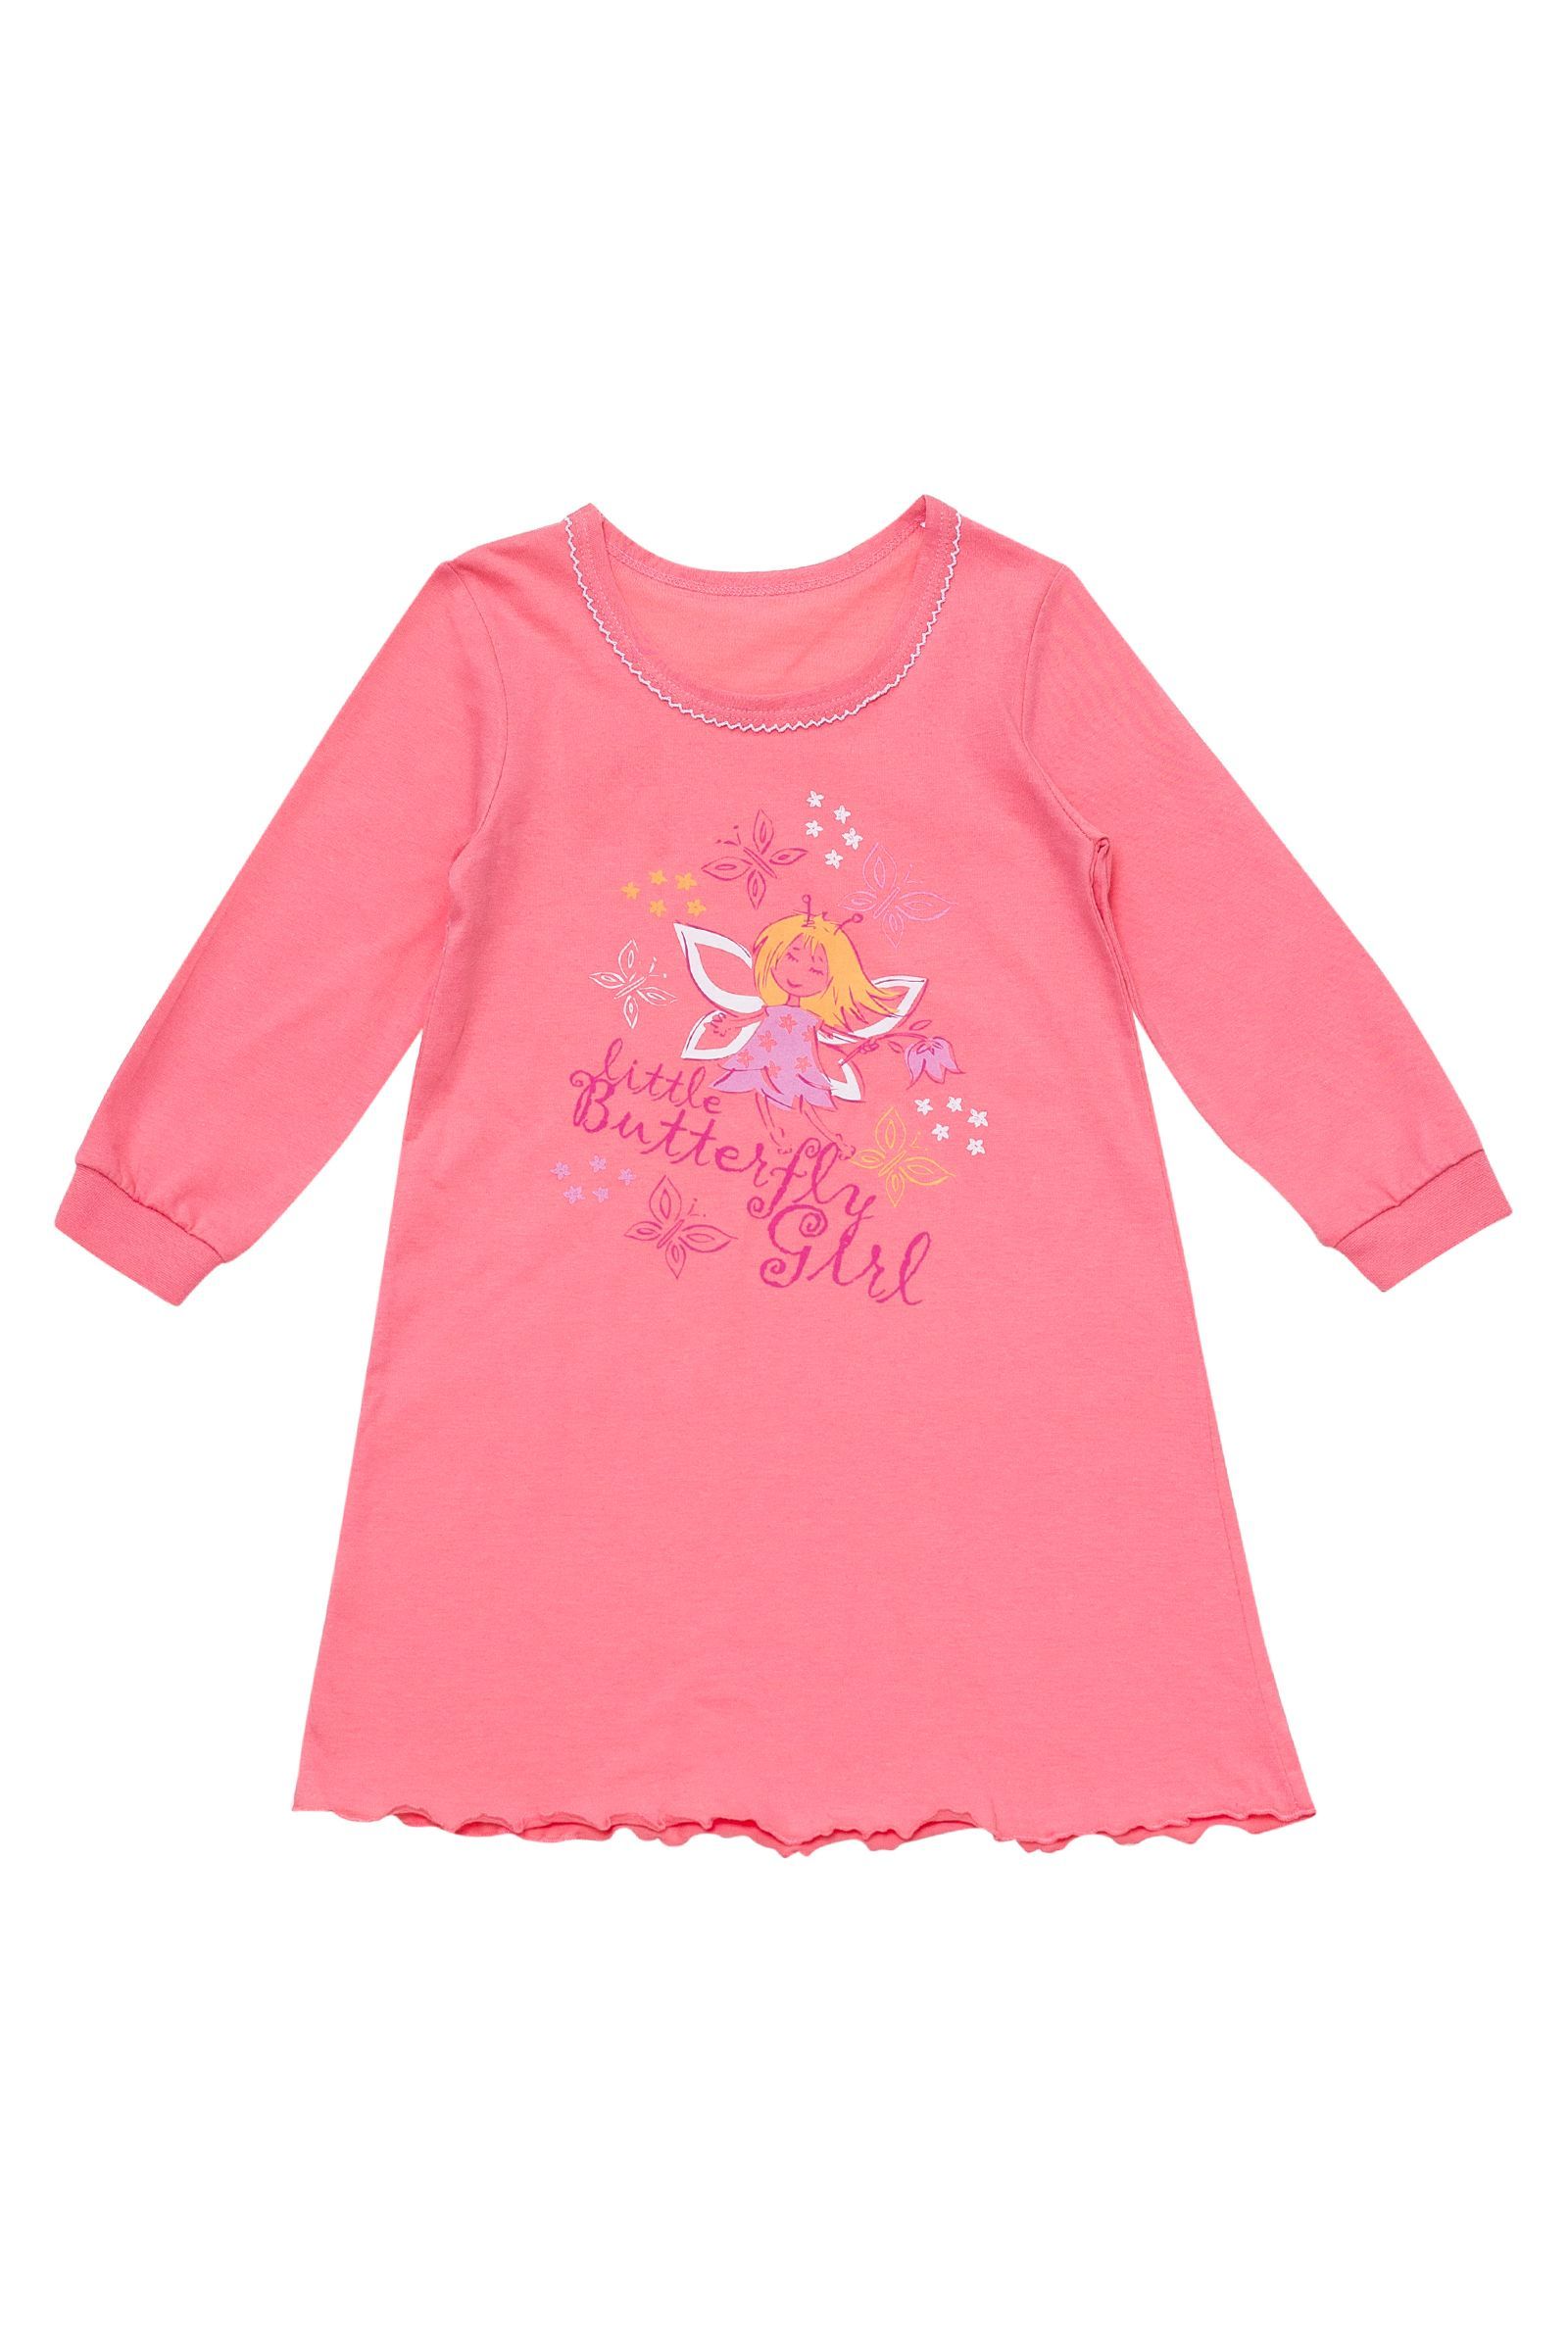 Ночная сорочка-СР02-2231 оптом от производителя детской одежды 'Алёна'